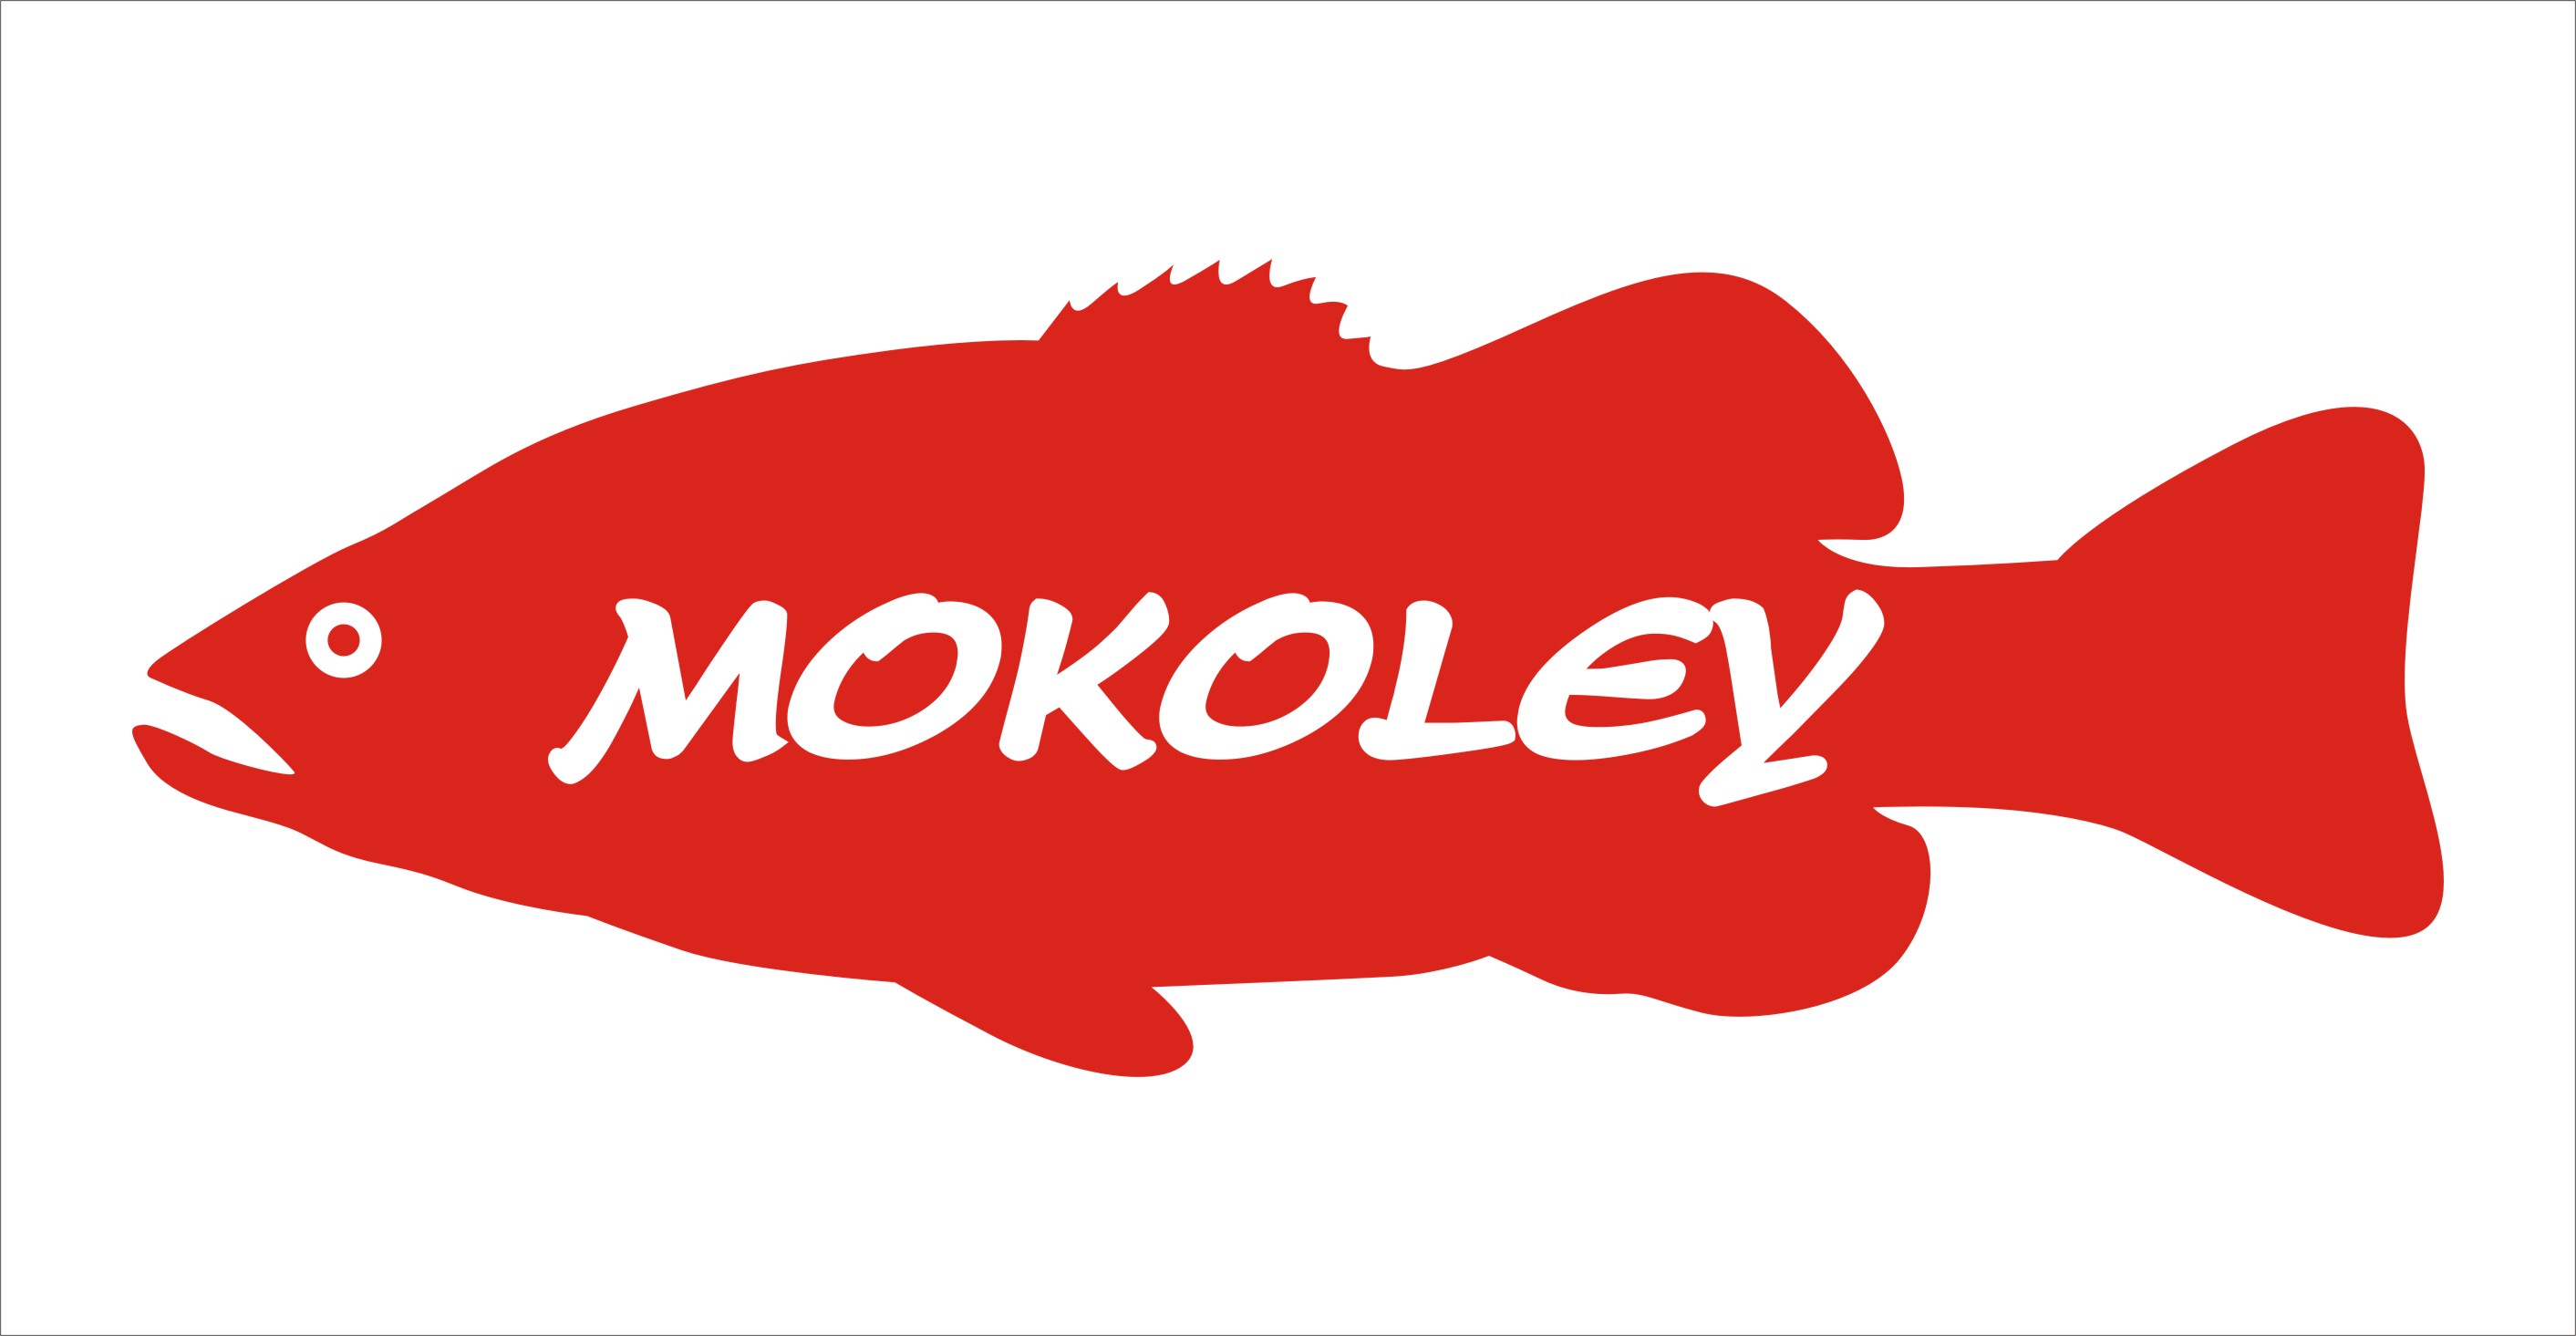 [b]คณะกรรมการชุมชนฯ ขอขอบคุณ บริษัท MOKOLEY ที่ร่วมสนับสนุนของรางวัลให้แก่นักกีฬาค่ะ[/b]